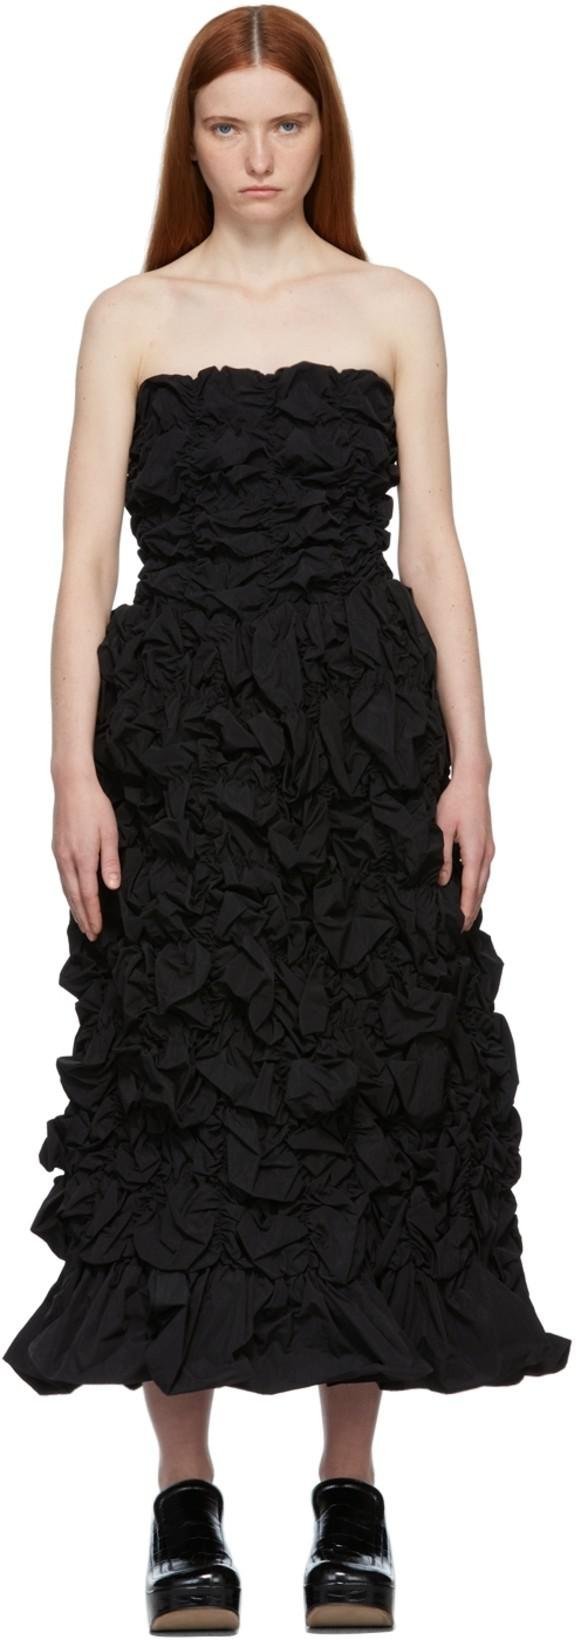 Black Ruched Dress by SHUSHU/TONG